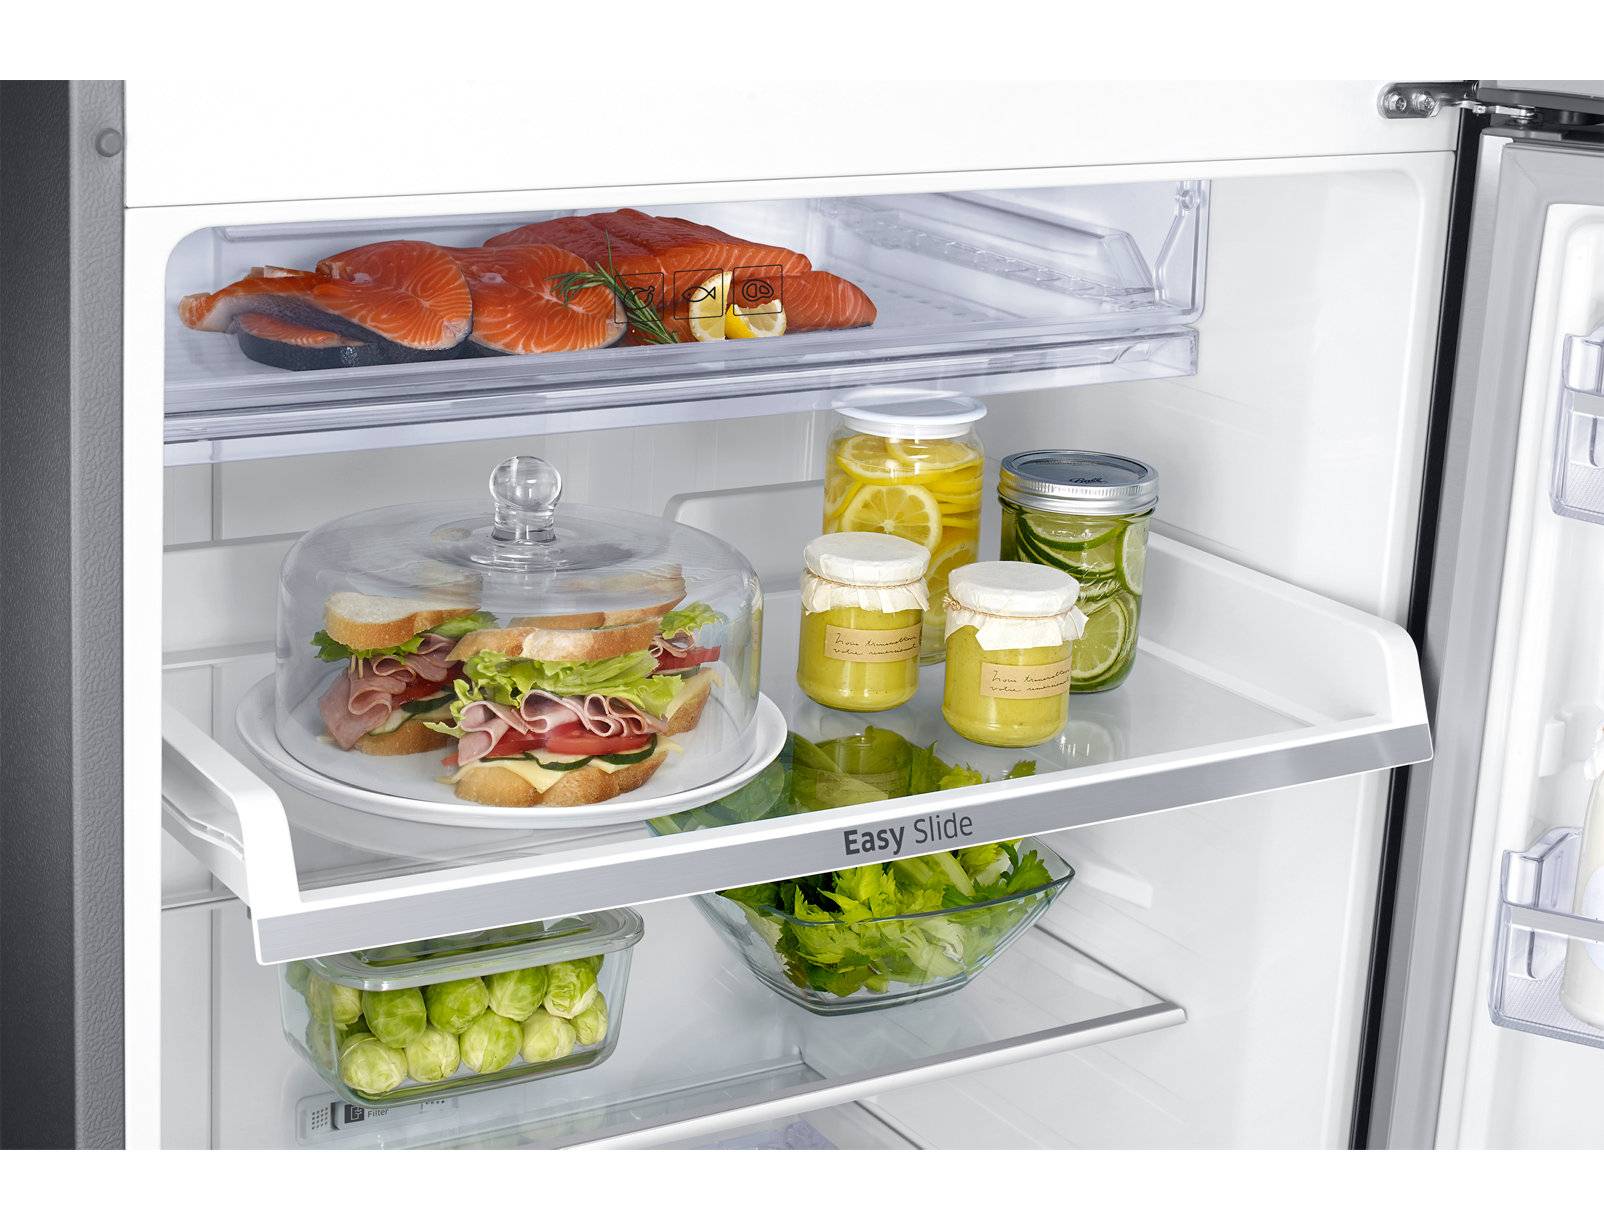 Самые интересные функции современных холодильников. cтатьи, тесты, обзоры